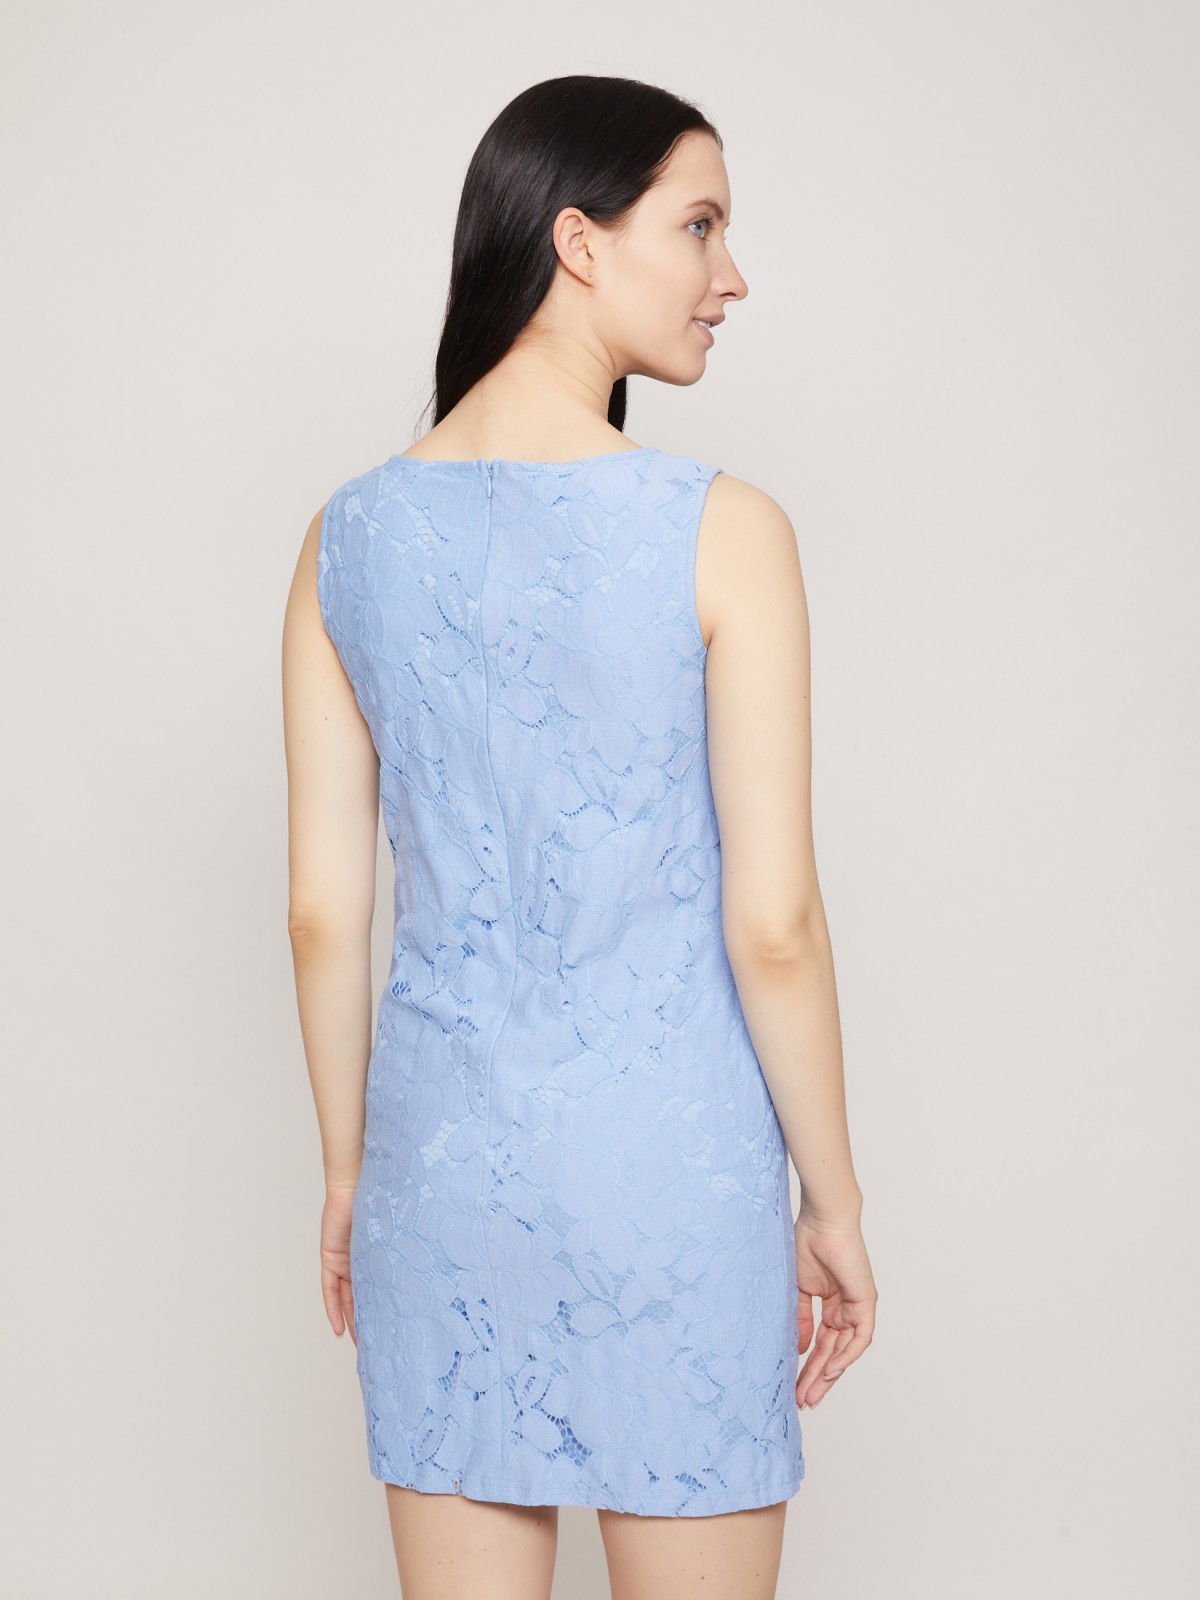 Кружевное платье мини zolla 02126829F262, цвет светло-голубой, размер XS - фото 5